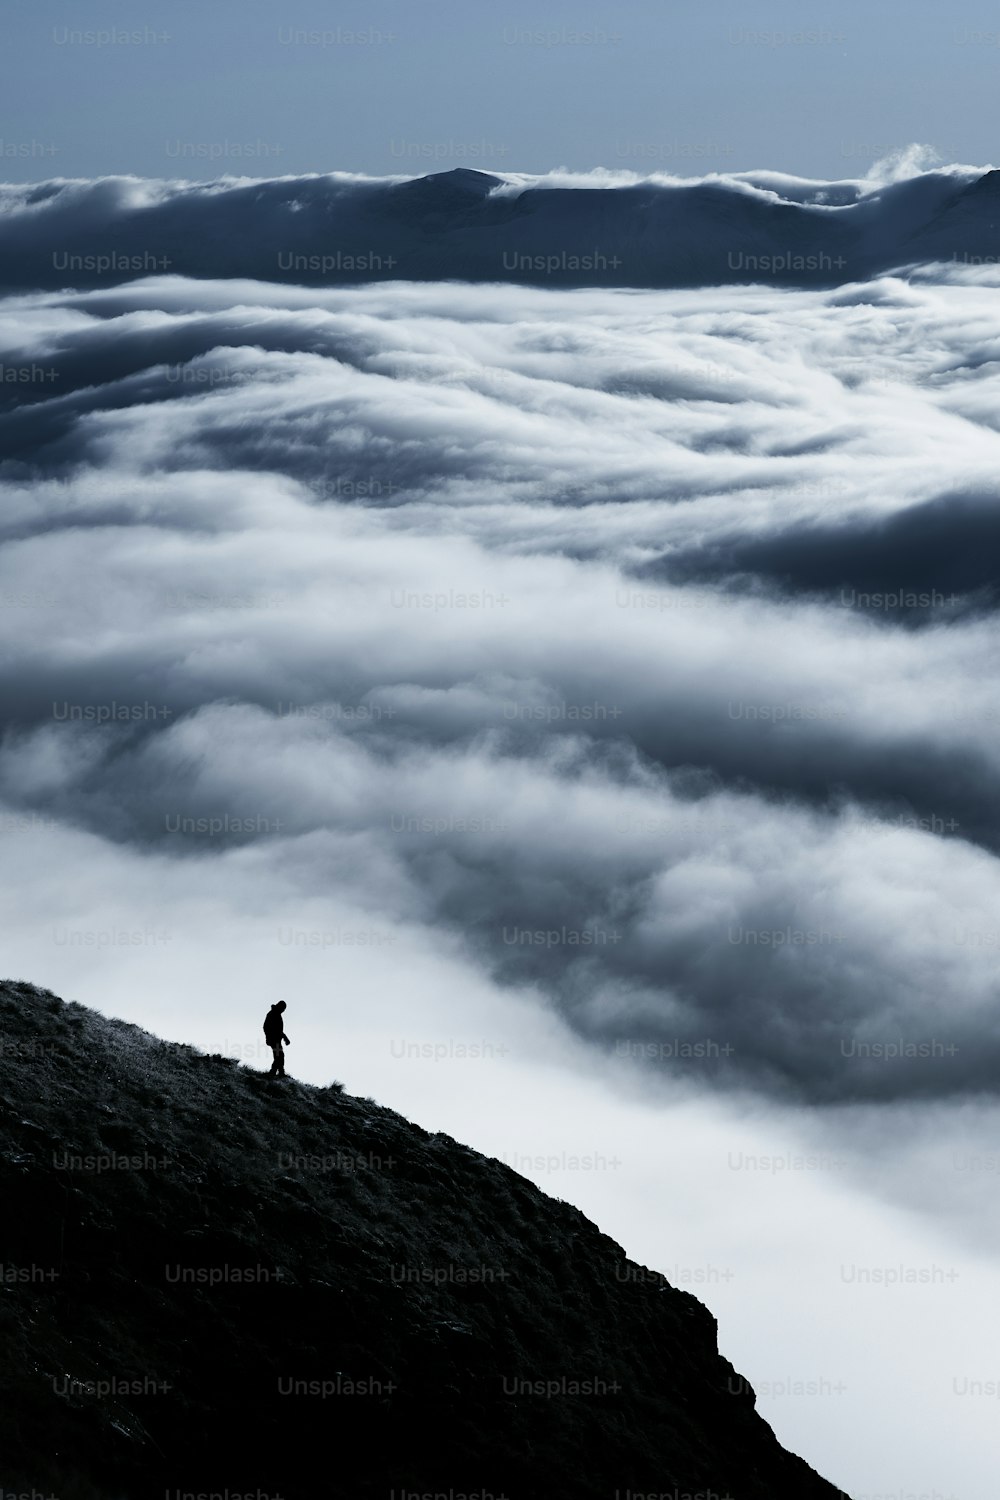 una persona parada en la cima de una montaña por encima de las nubes